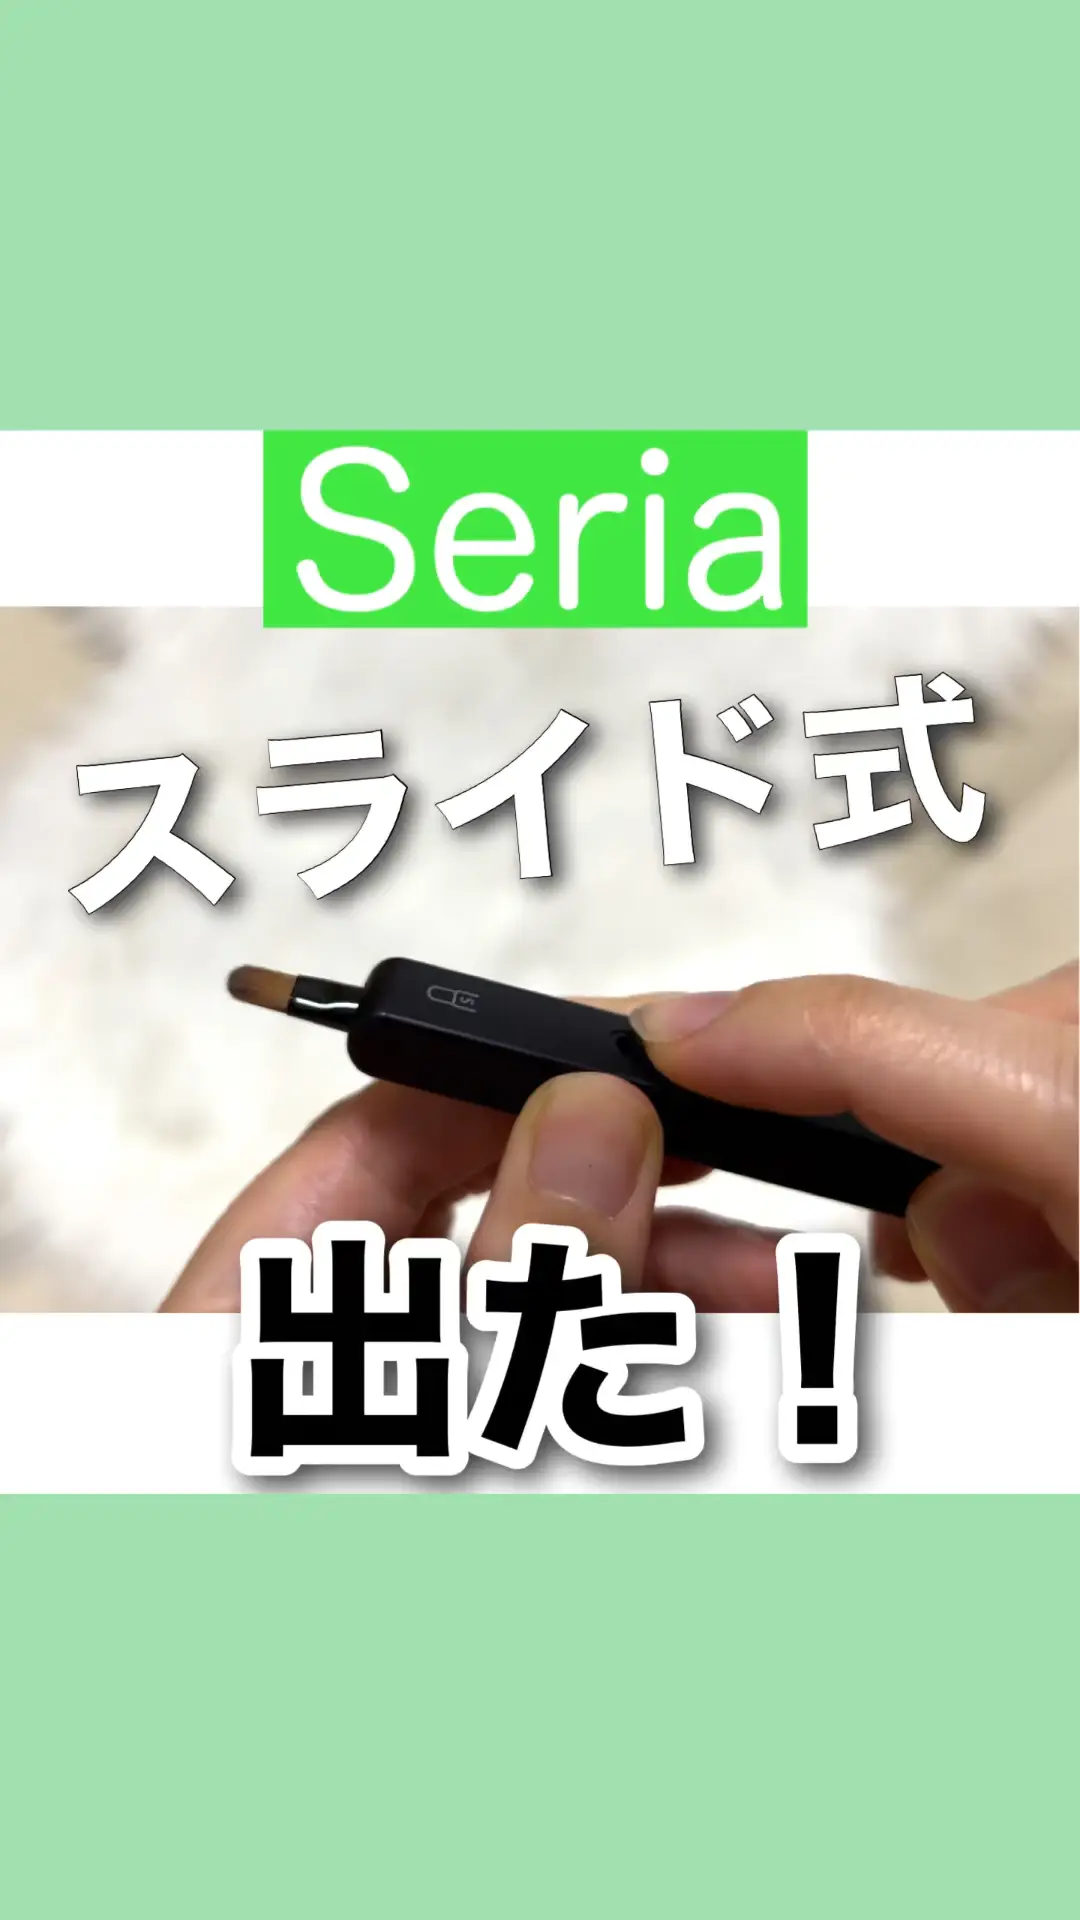 【100均購入品】メイクブラシにスライド式出た!!Seriaセリア新商品